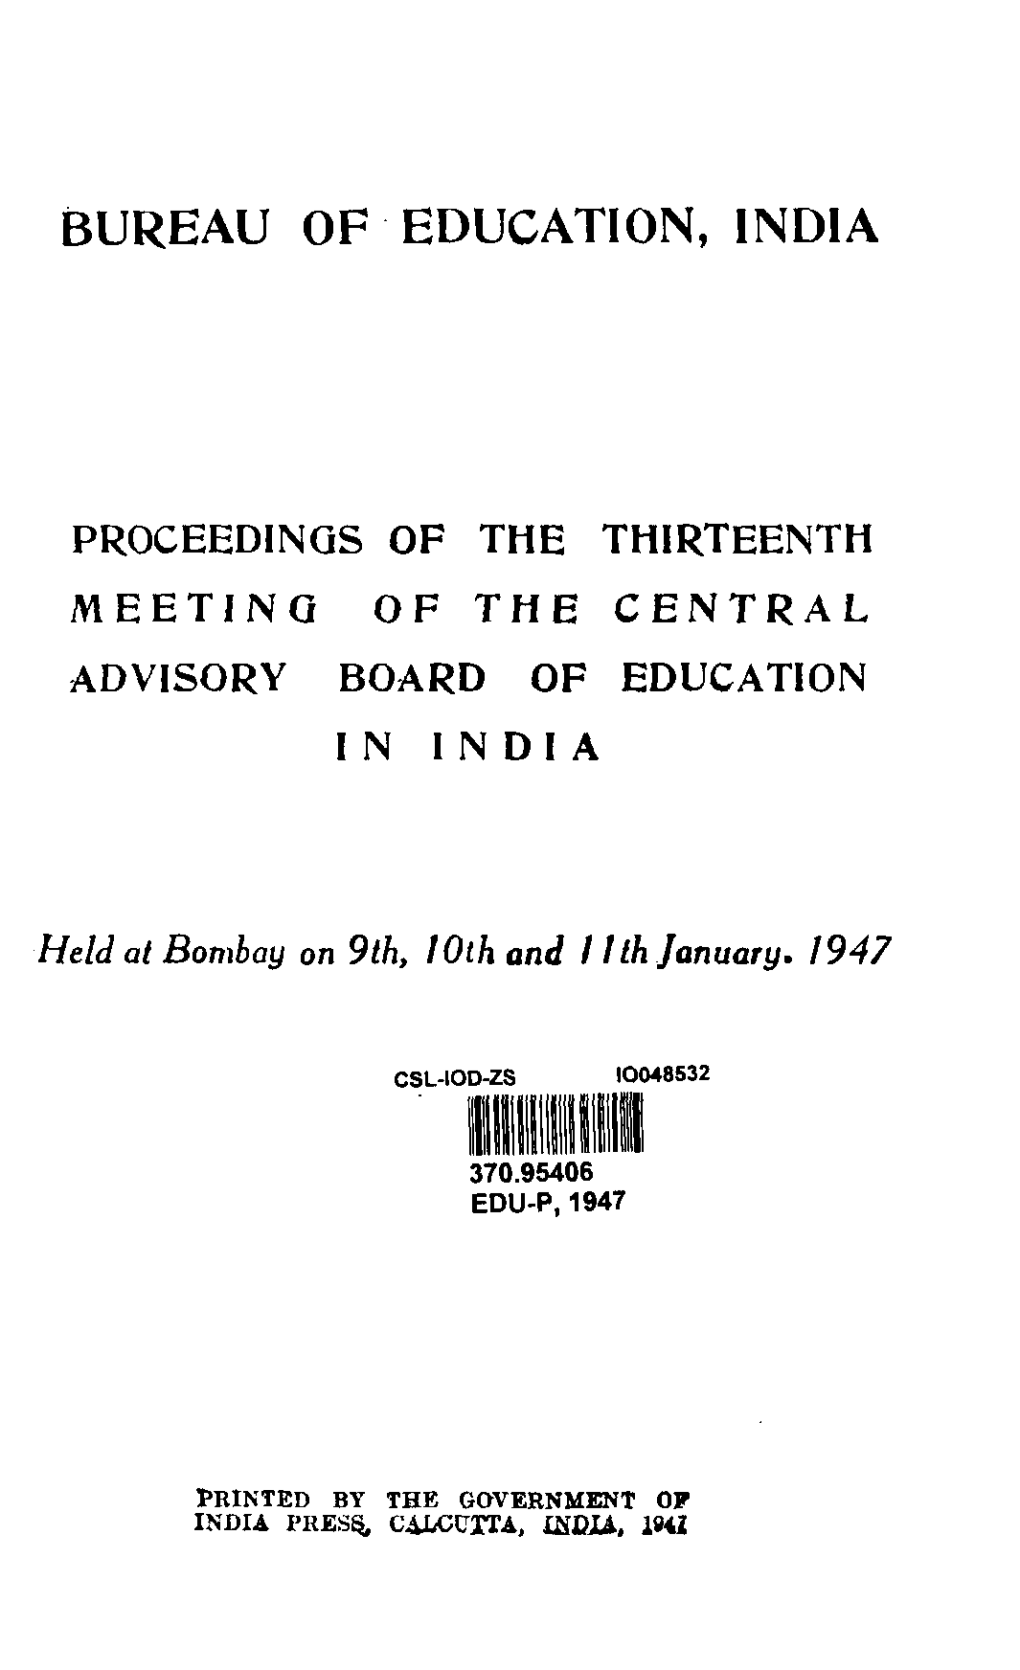 Bureau of Education, India